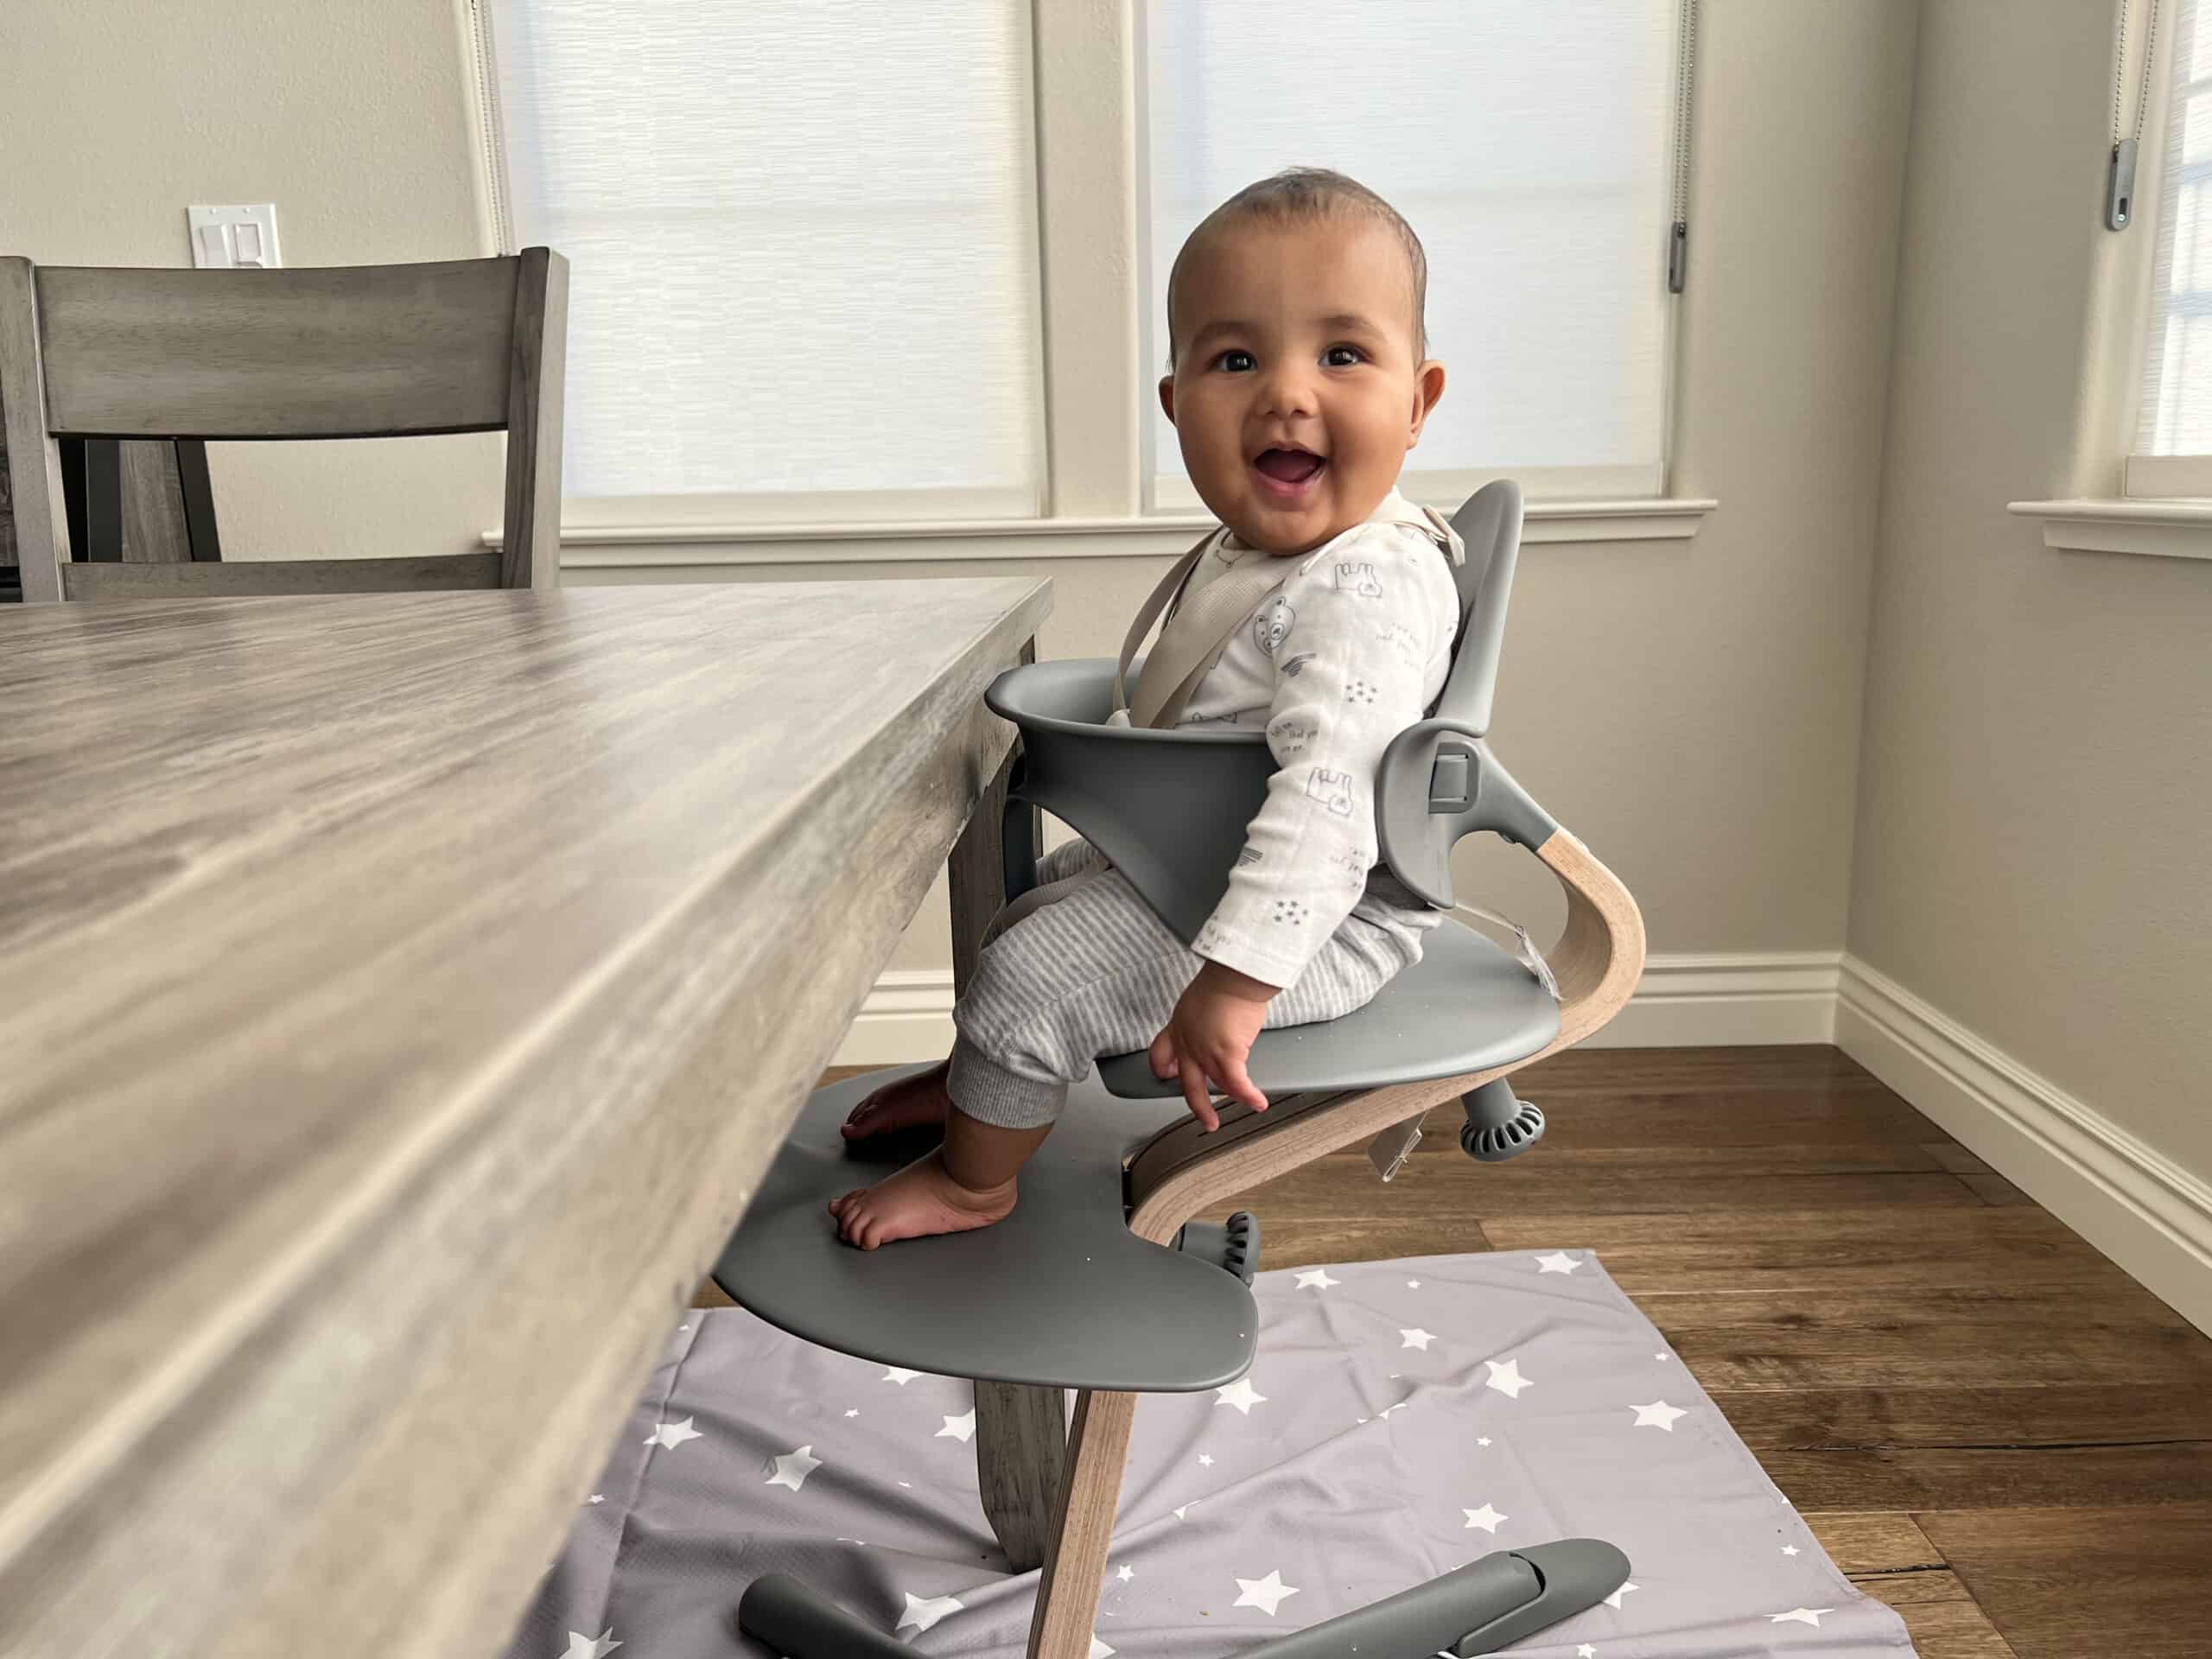 La guía de sillas altas/tronas para bebés Solid Starts